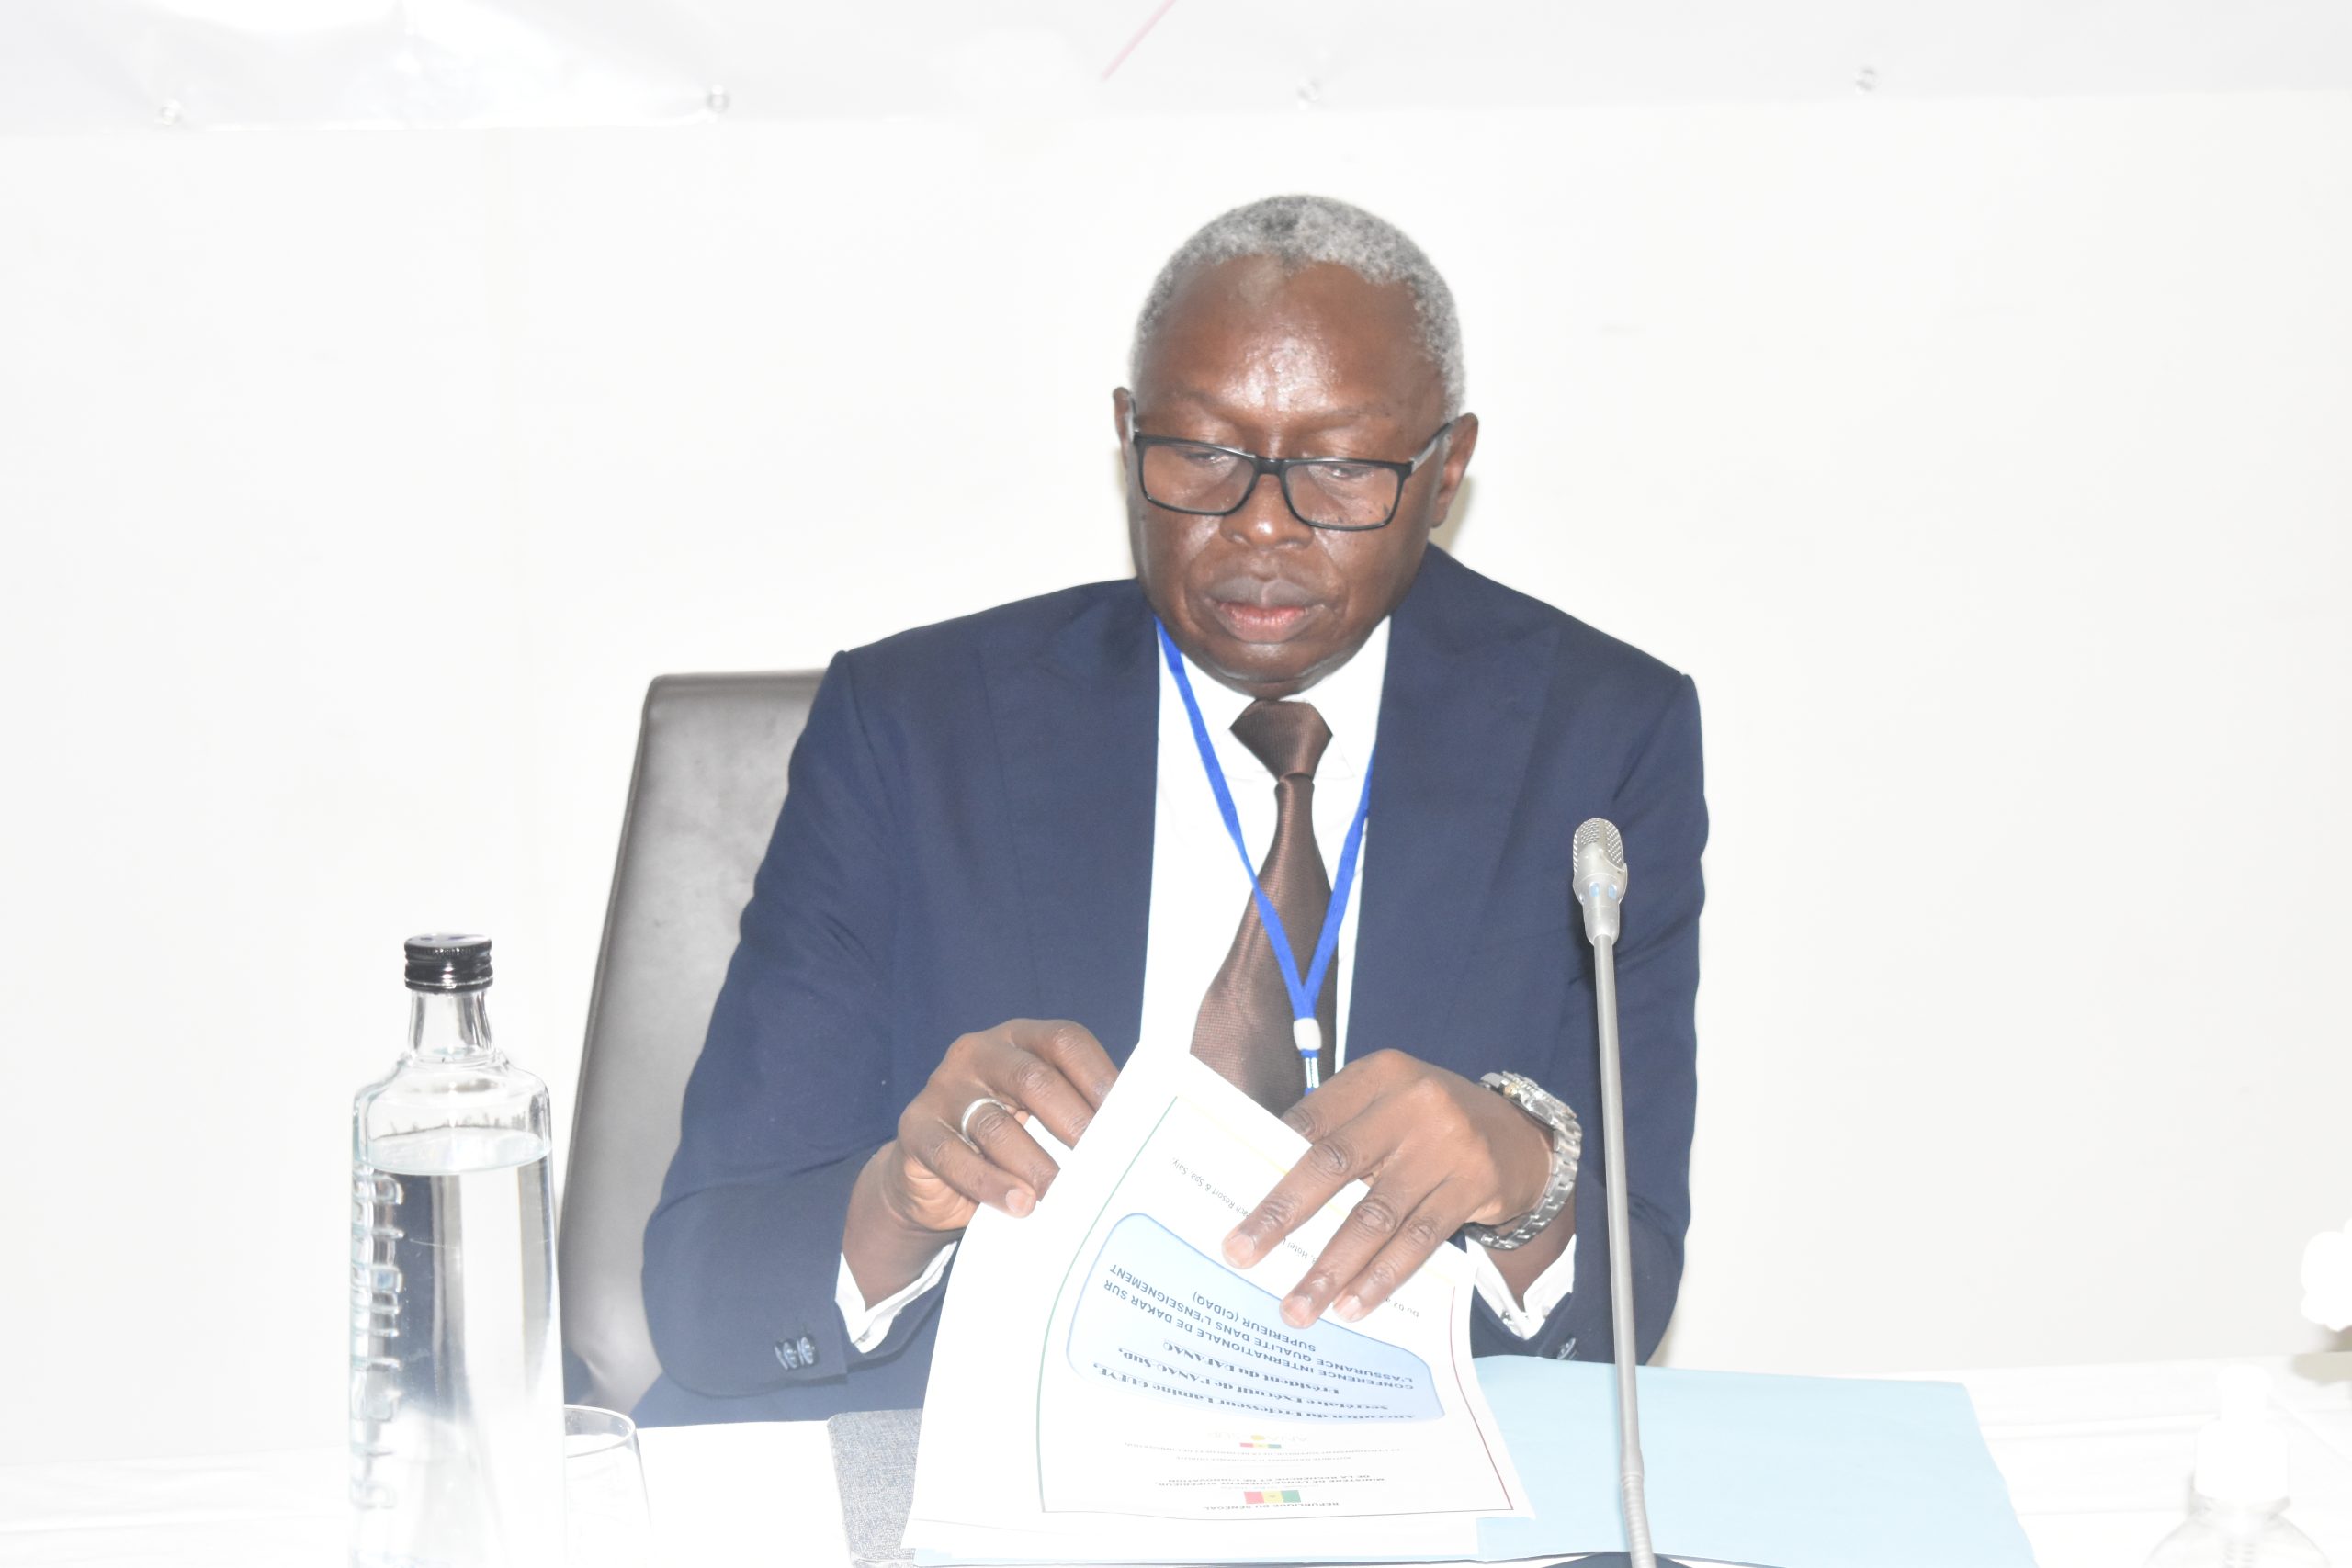 Lire la suite à propos de l’article Le Secrétaire exécutif de l’ANAQ-Sup explique la pertinence de la tenue de la Conférence internationale de Dakar sur l’Assurance Qualité